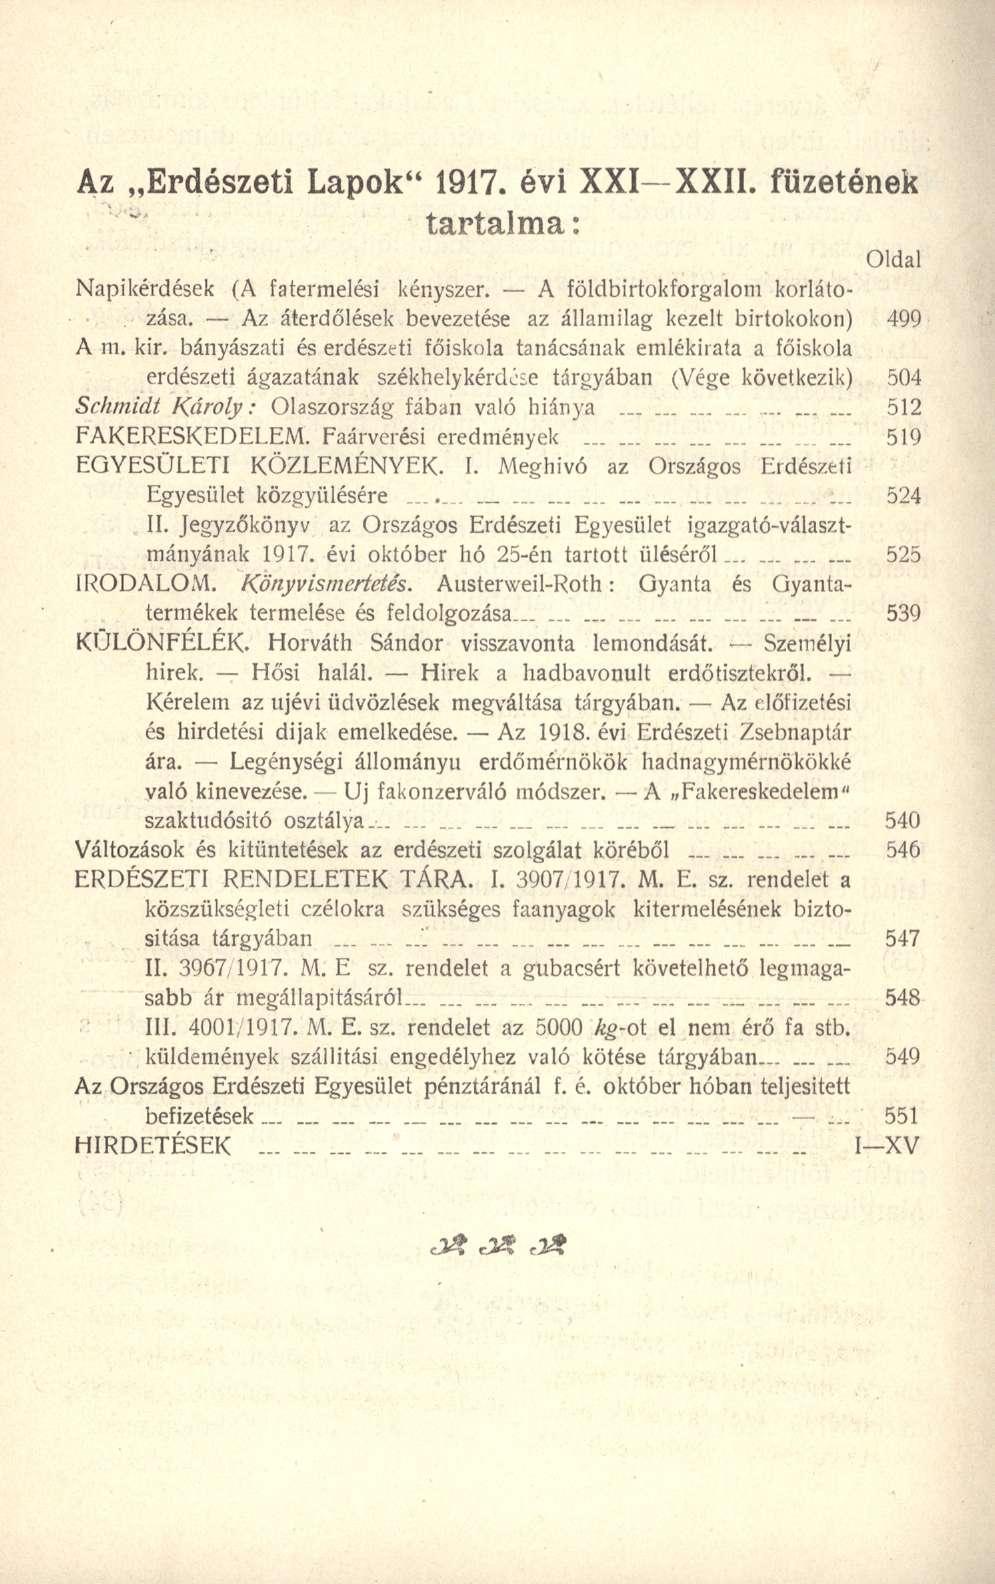 Az Erdészeti Lapok" 1917. évi XXI-XXII. füzetének tartalma: Oldal Napikérdések (A fatermelési kényszer. A földbirtokforgalom korlátozása.